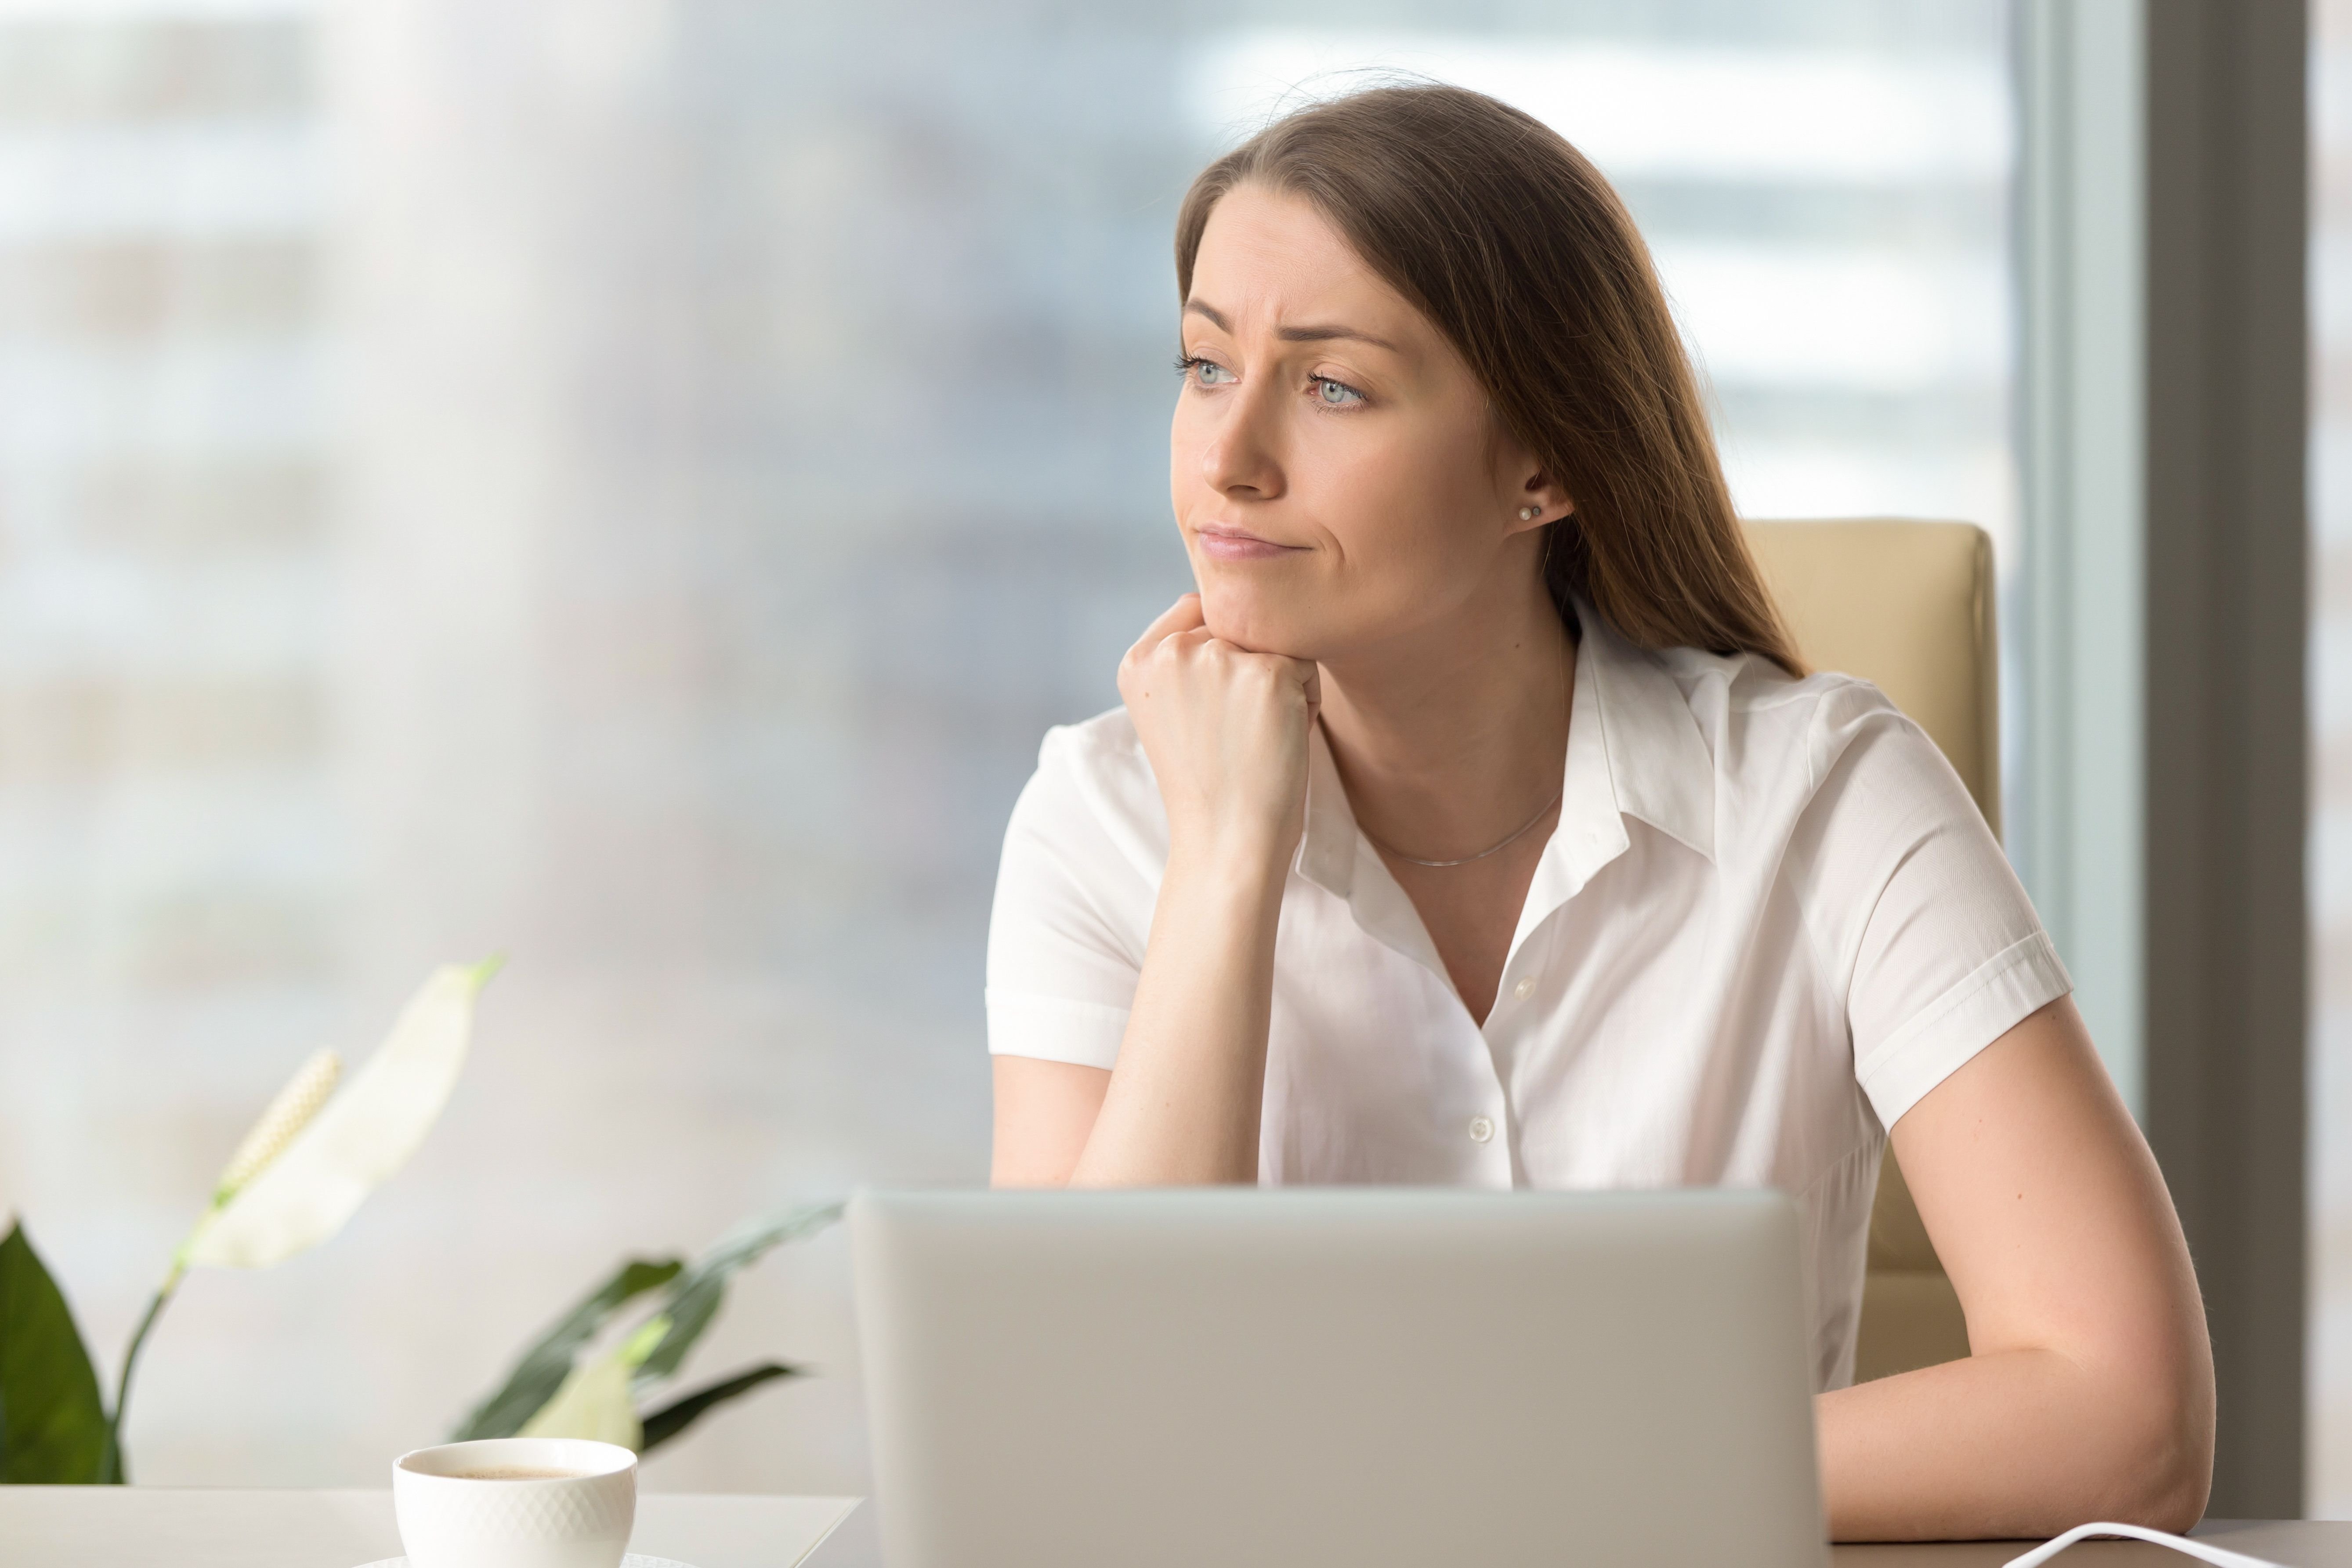 Une femme a l'air déçue en regardant un ordinateur portable. | Source : Shutterstock